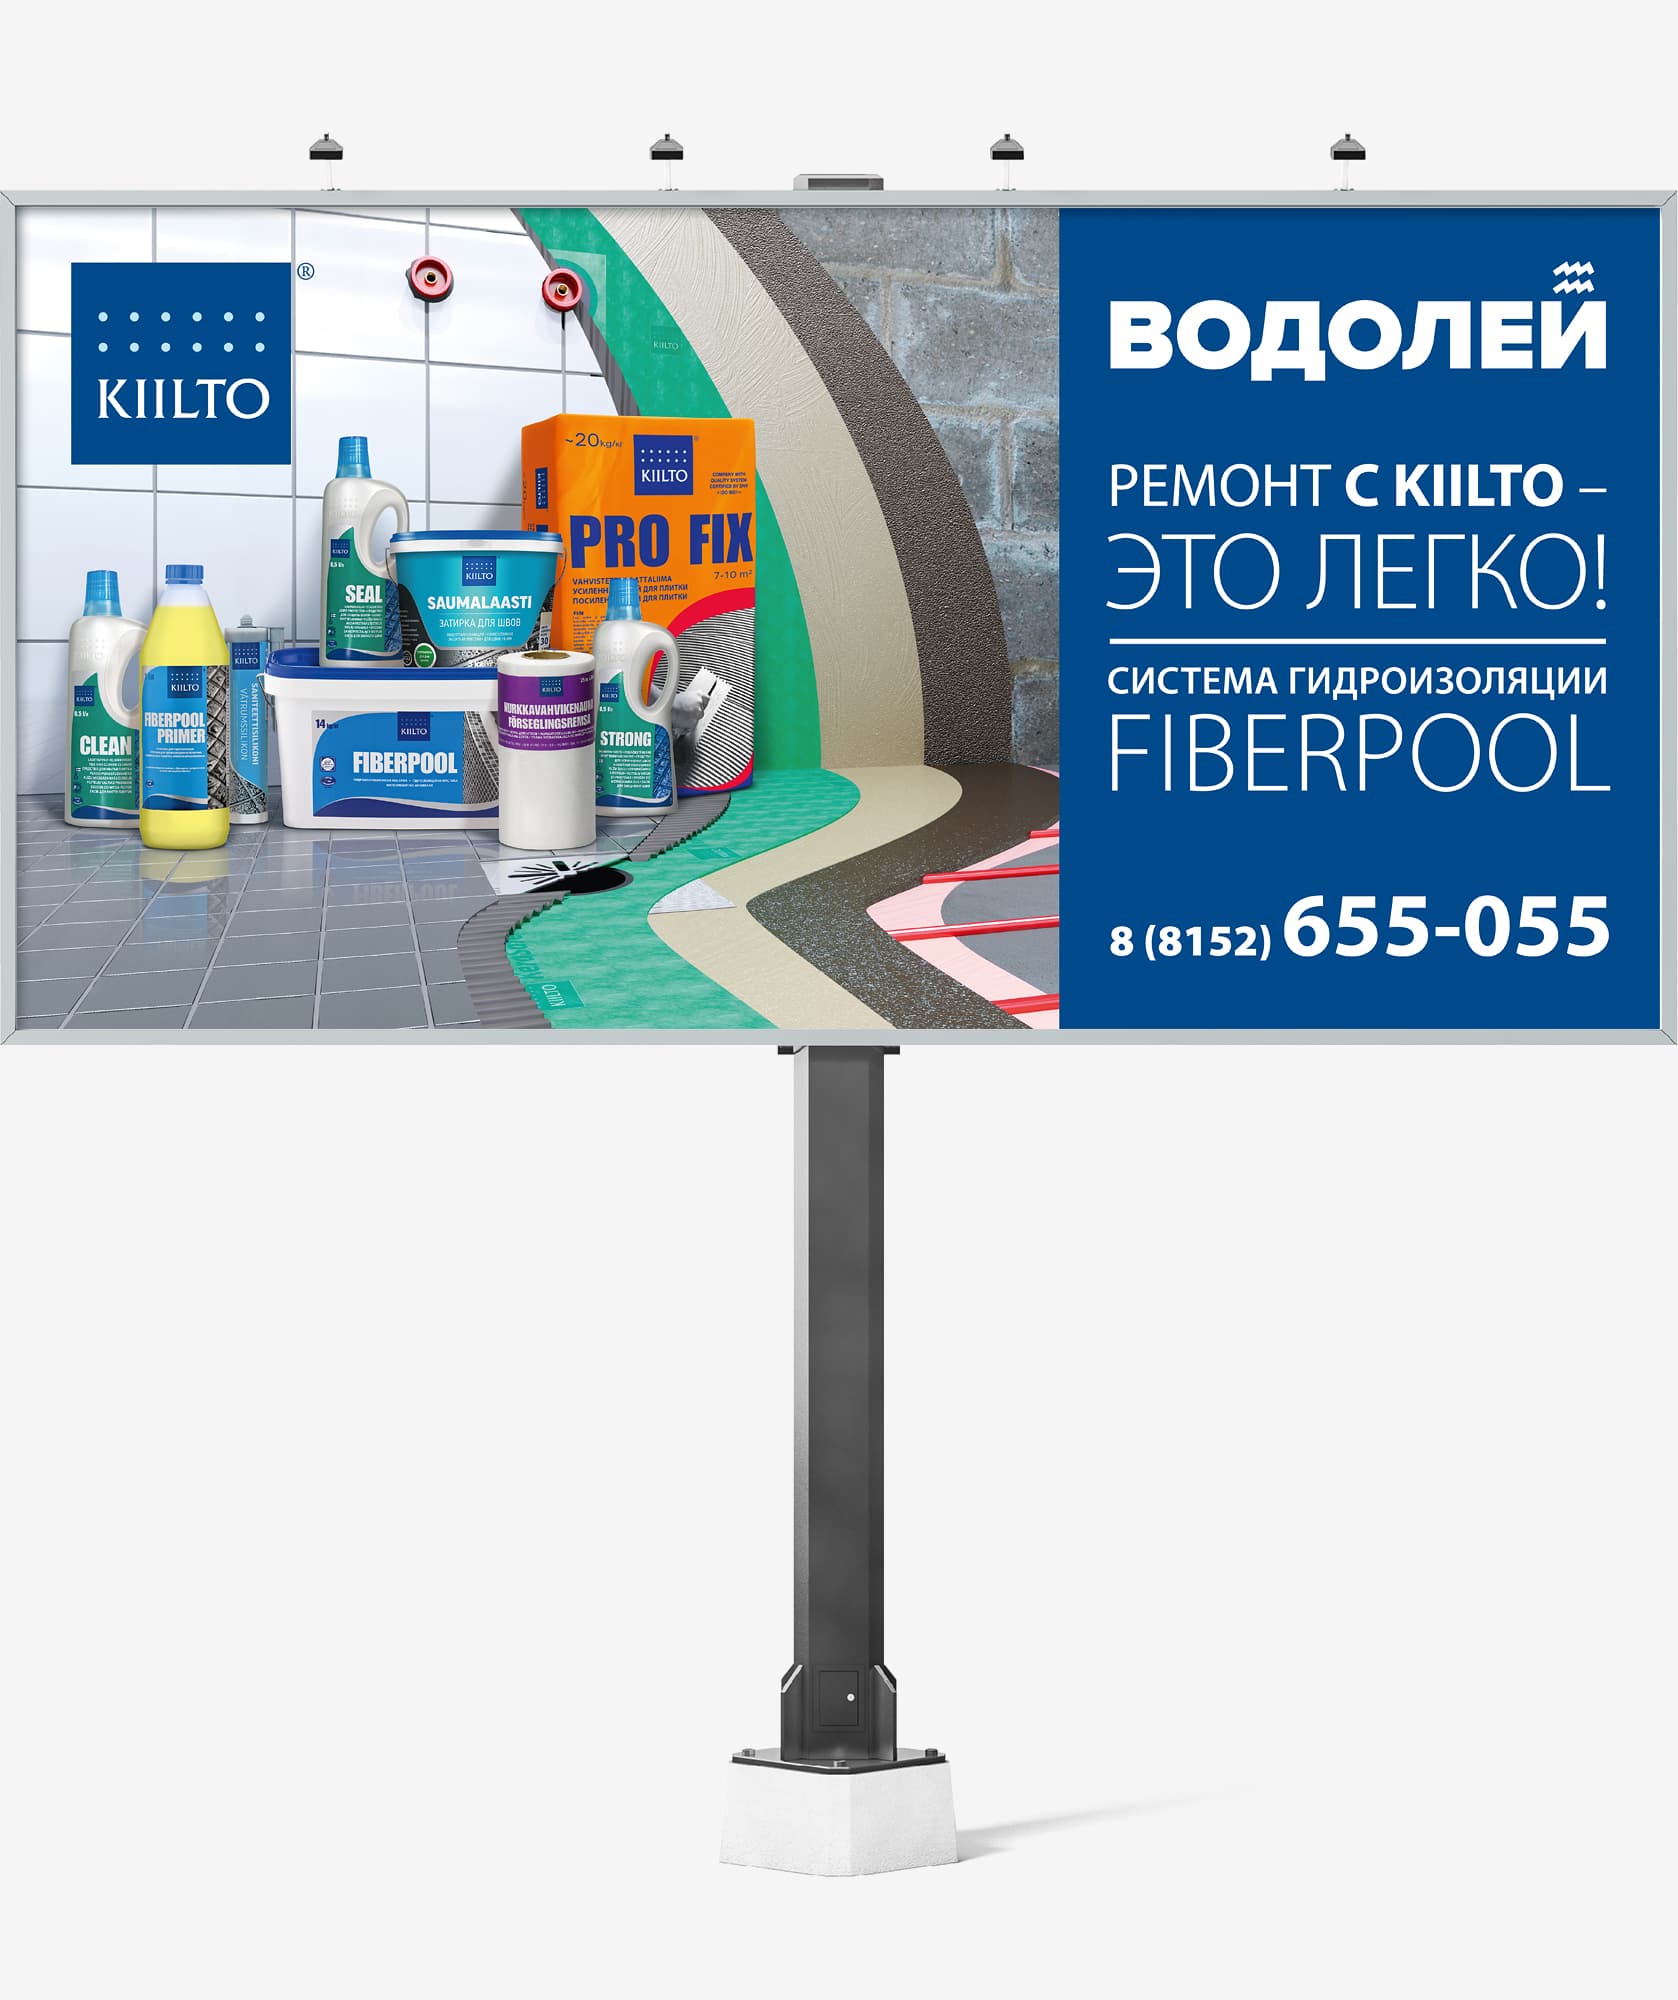 Разработали дизайн рекламного билборда для системы гидроизоляции FIBERPOOL компании KIILTO